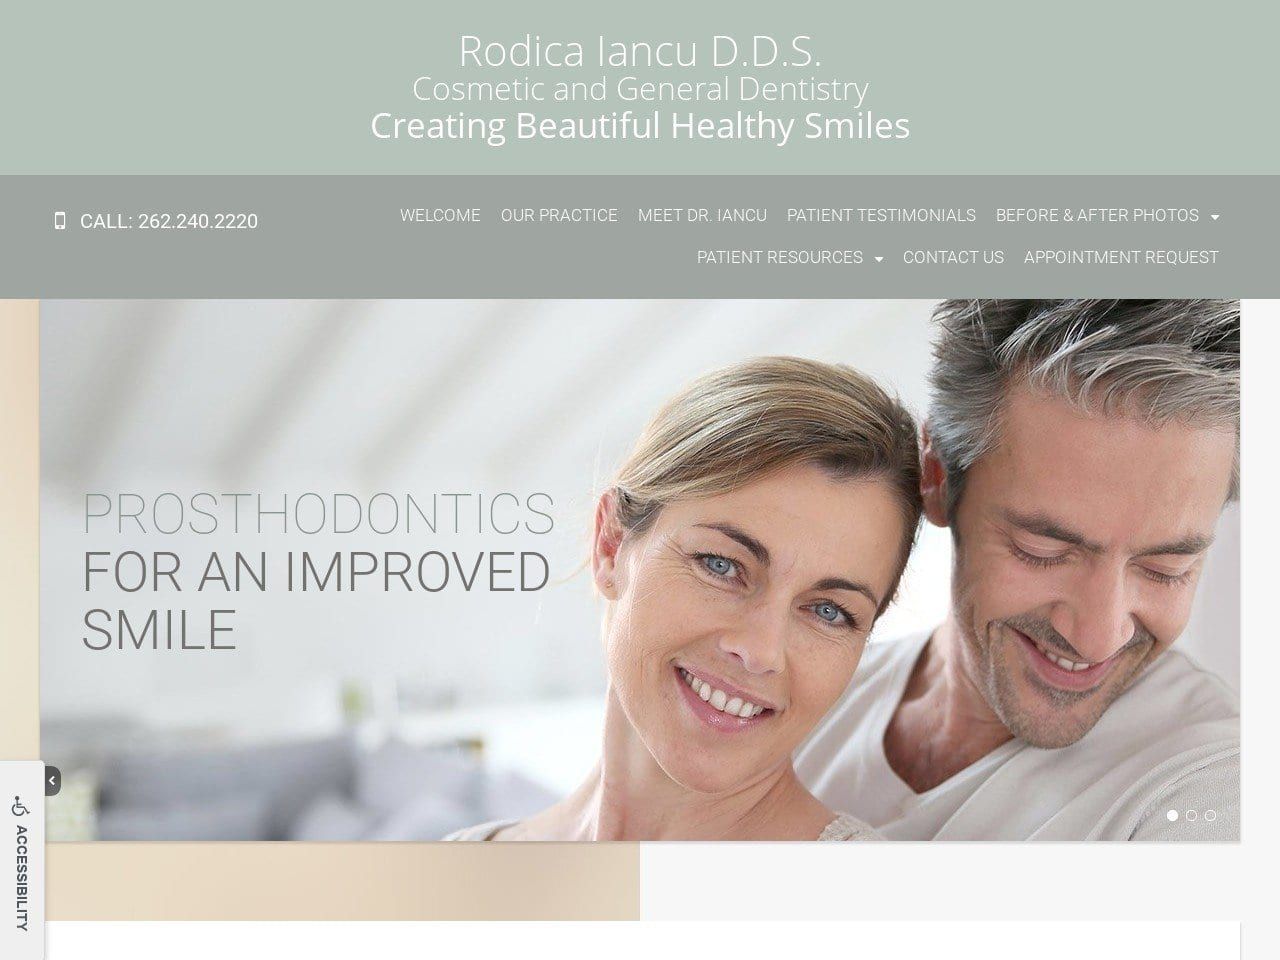 Dr. Rodica Iancu Website Screenshot from mequonsmiles.com